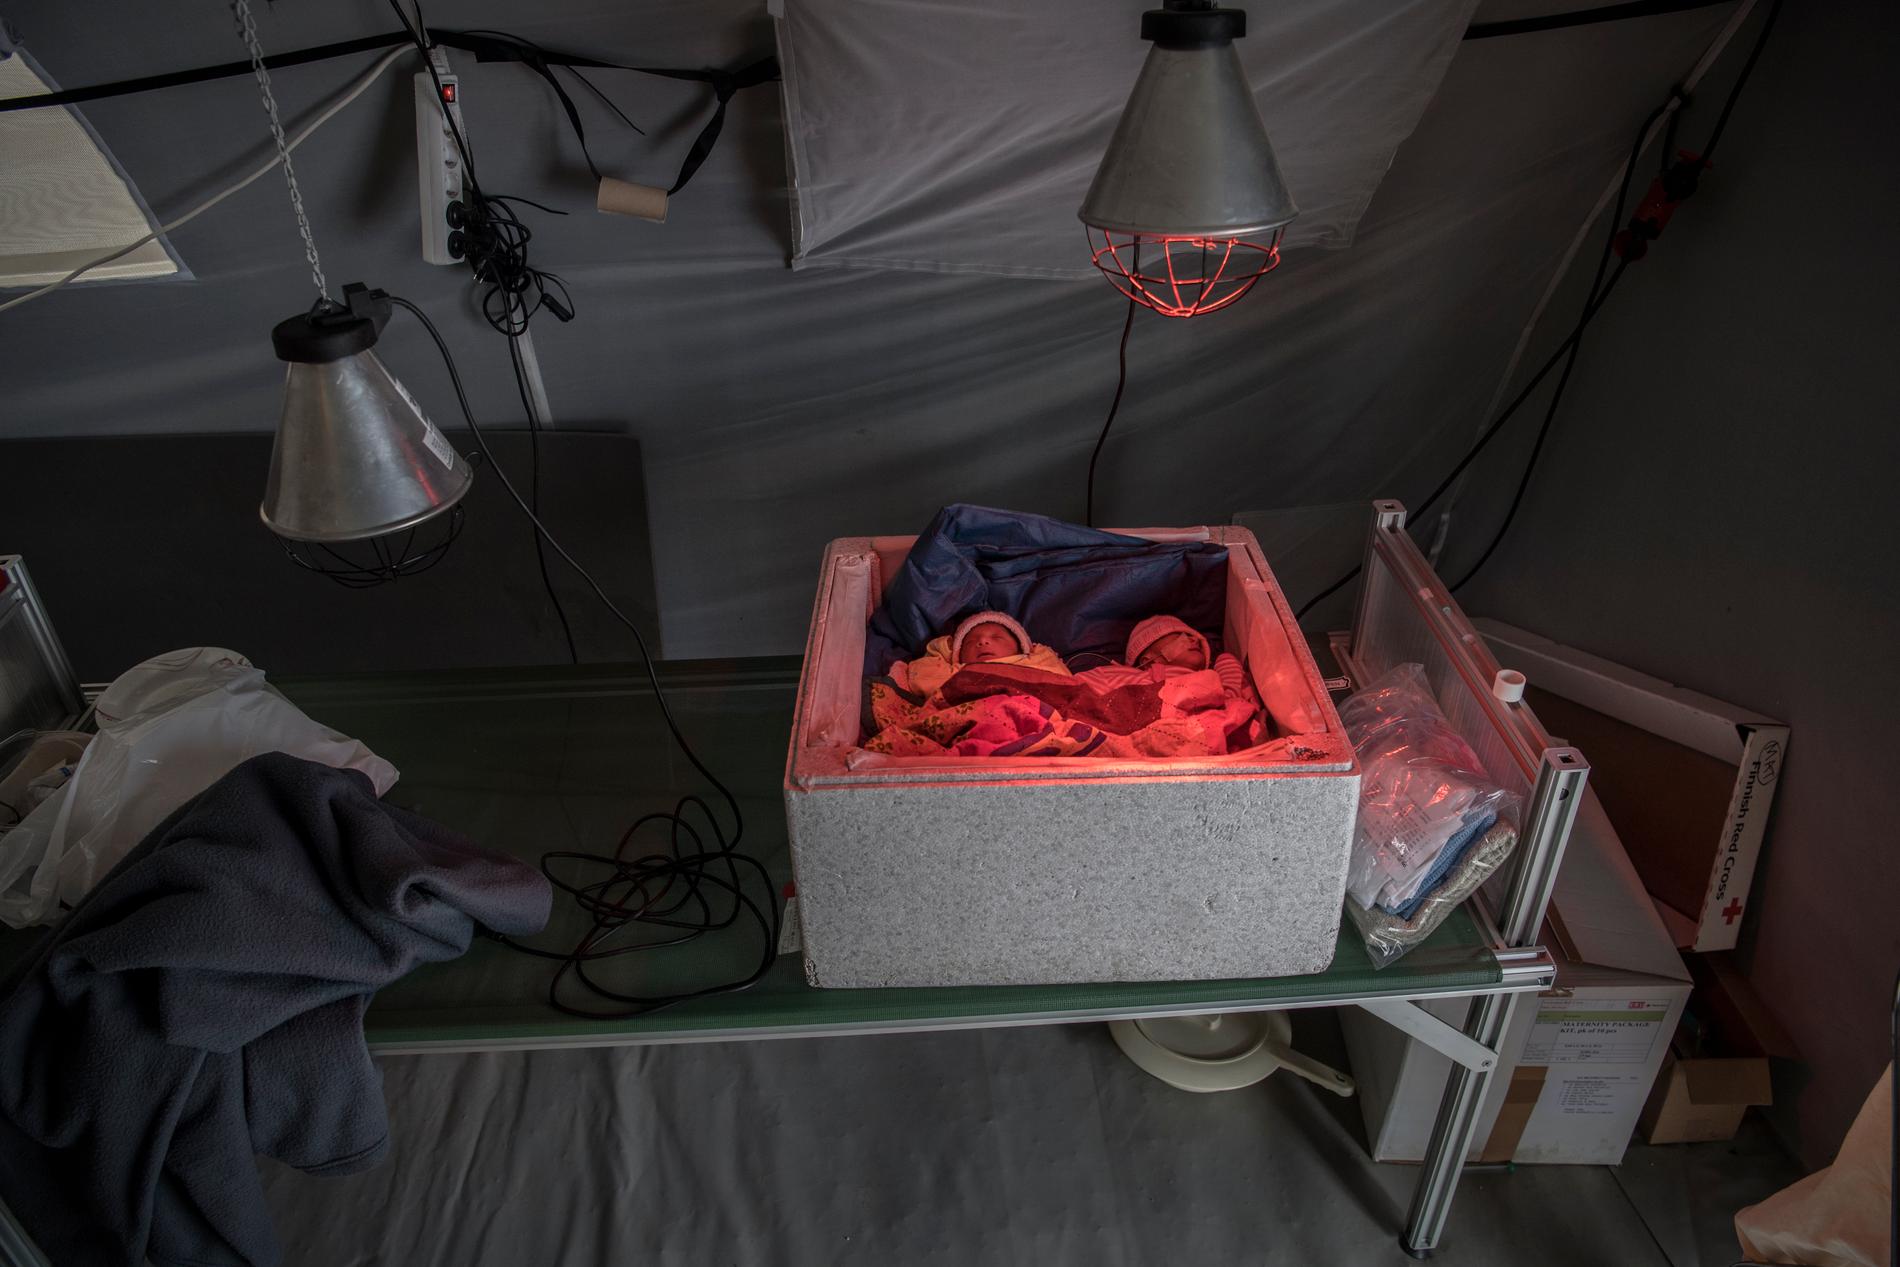 Två nyfödda tvillingflickor har lagts i en frigotlitlåda och får värme från en hemmasnickrad värmelampa på Röda korsets fältsjukhus utanför Kutupalonglägret.